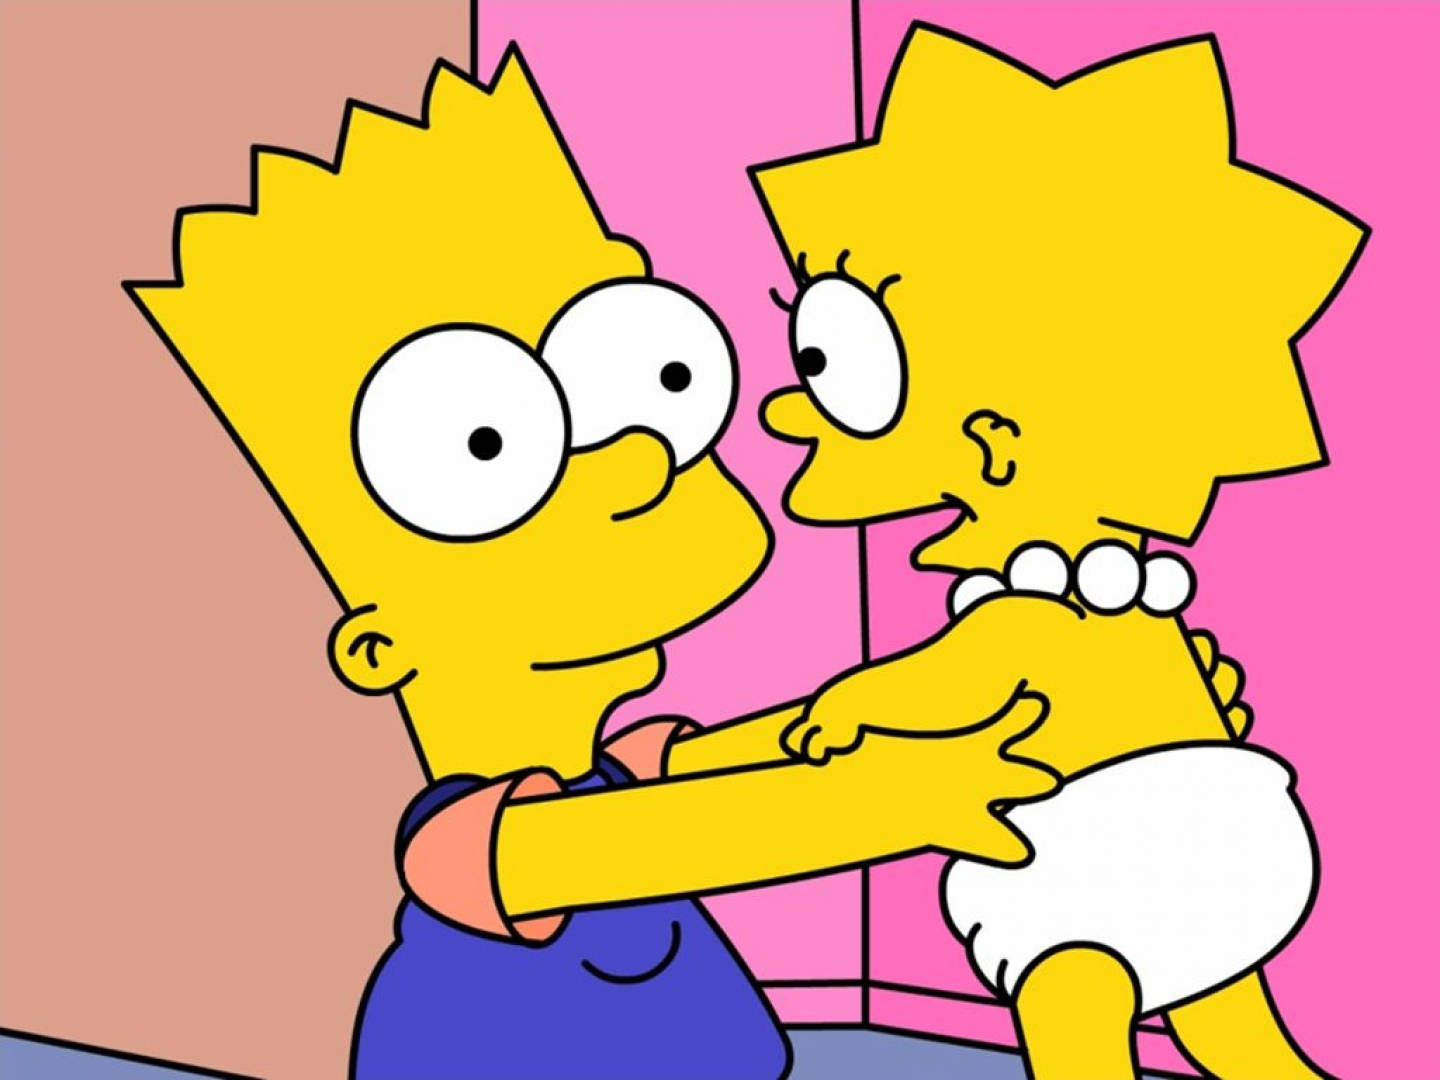 Sad Lisa and Bart Simpson edit on Vimeo